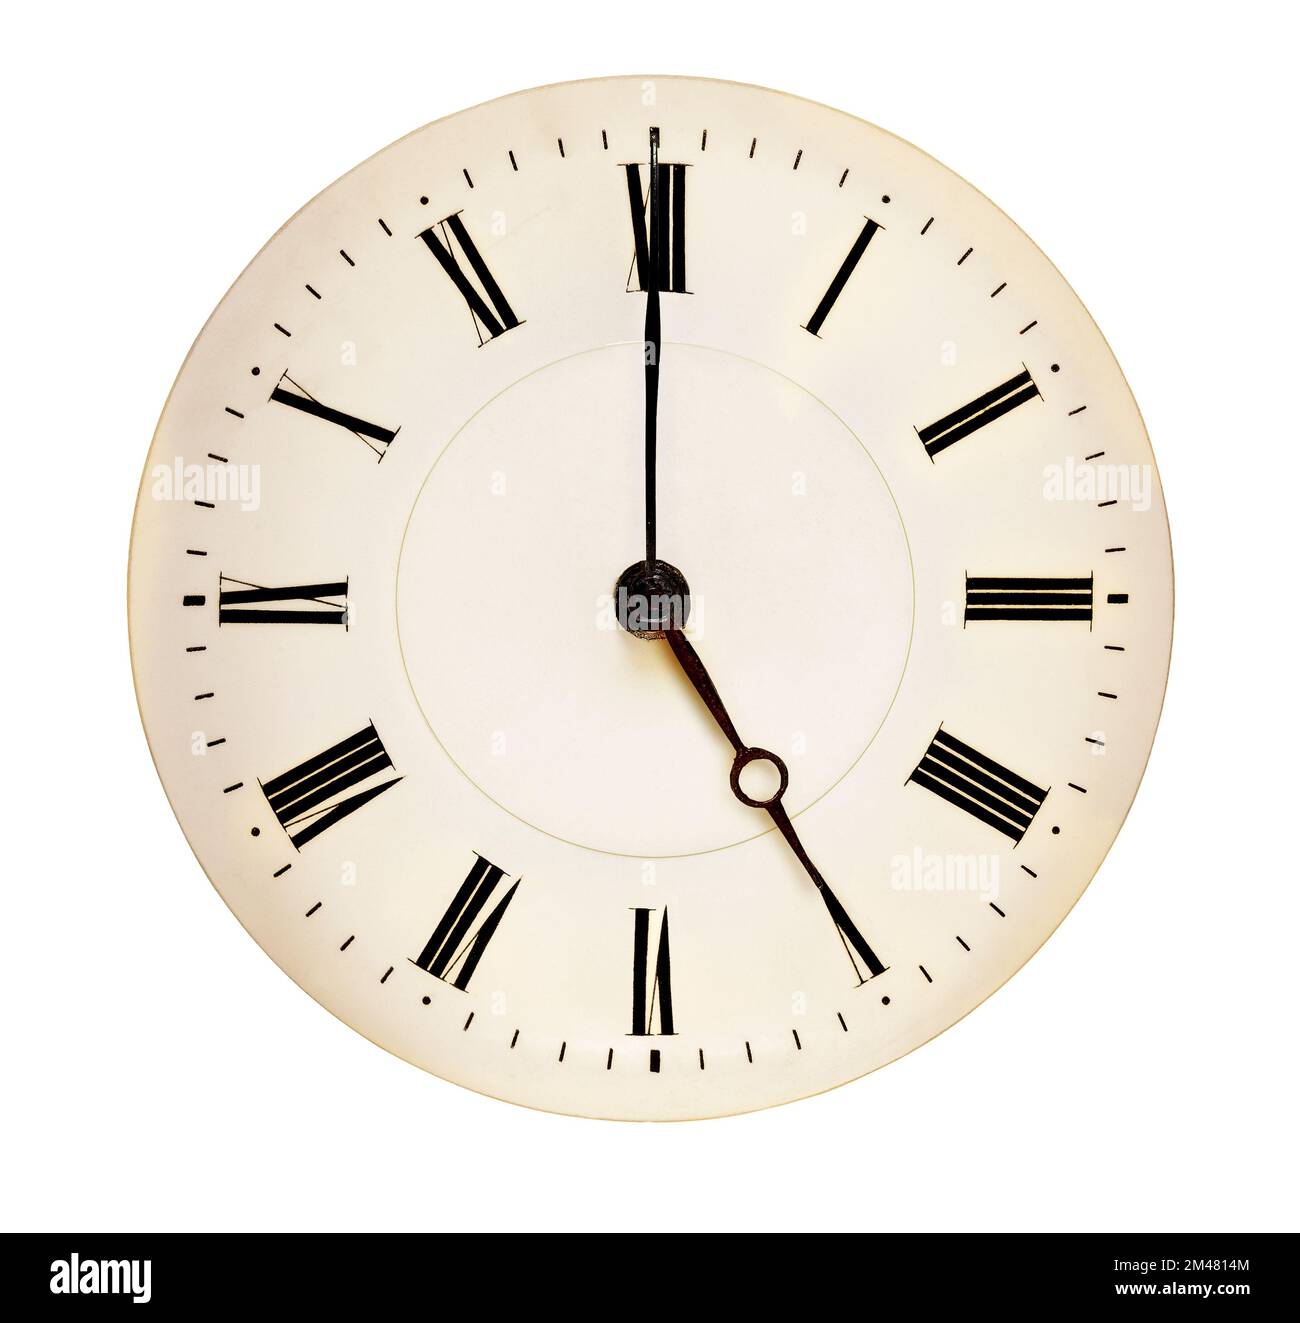 Cadran d'horloge antique pointant vers fiveo'clock isolé sur fond blanc. Concept du temps de thé Banque D'Images